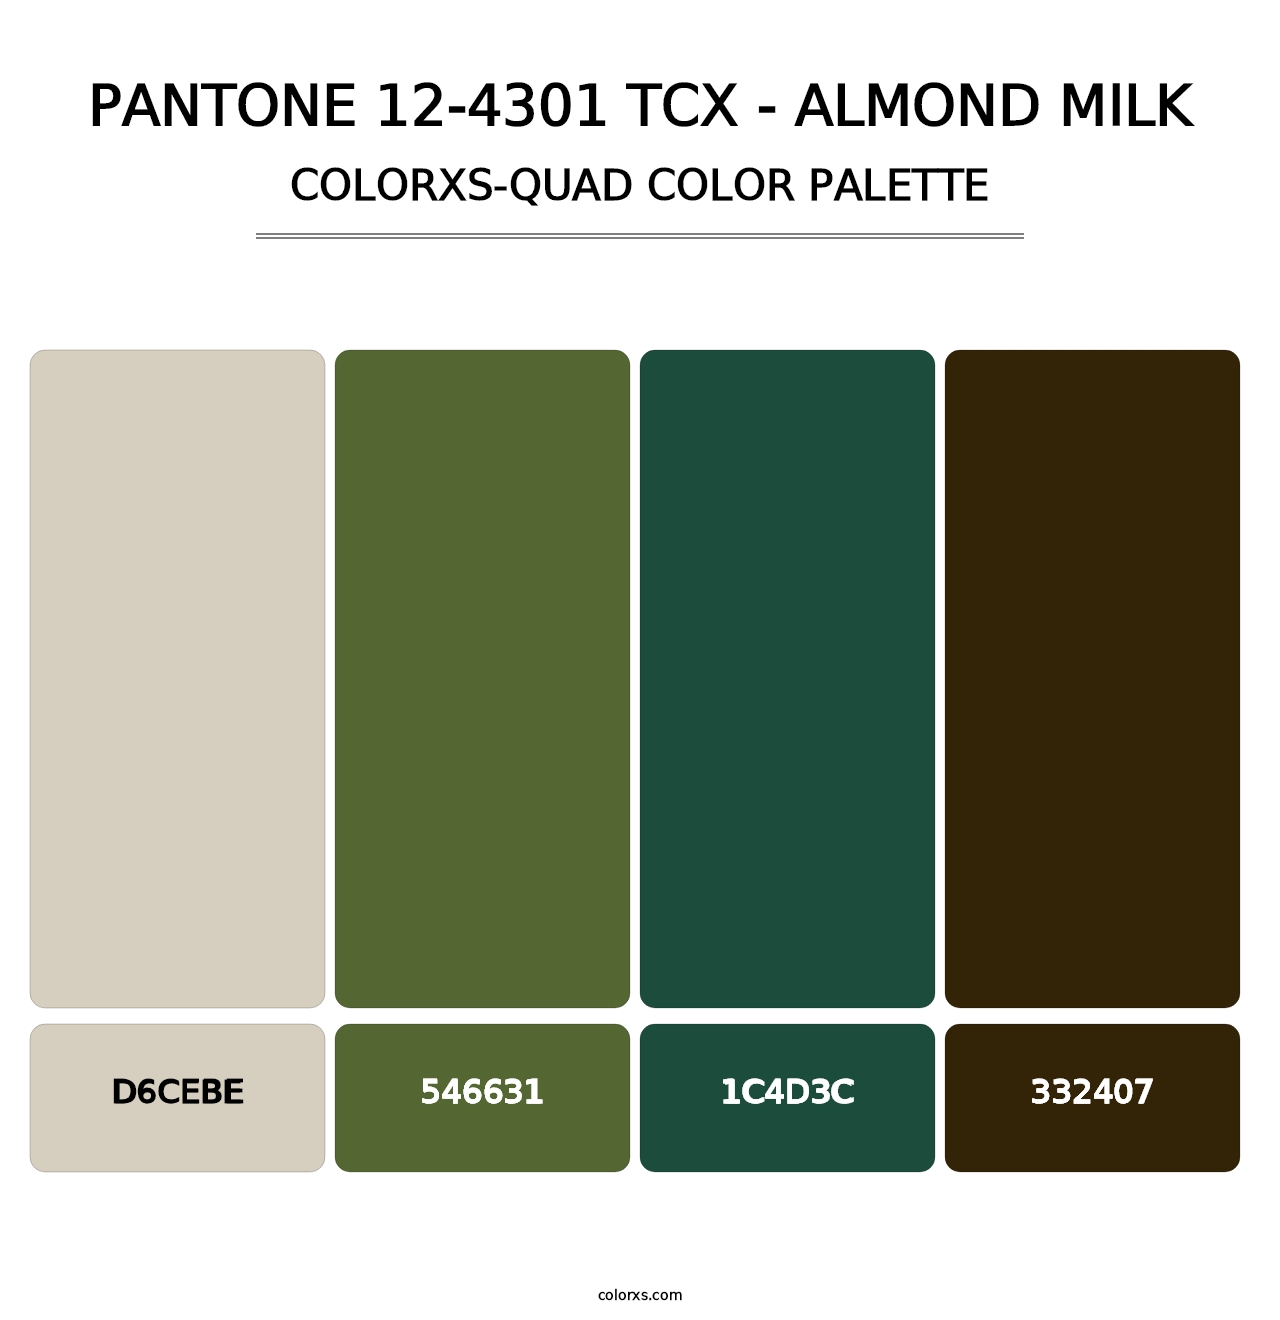 PANTONE 12-4301 TCX - Almond Milk - Colorxs Quad Palette